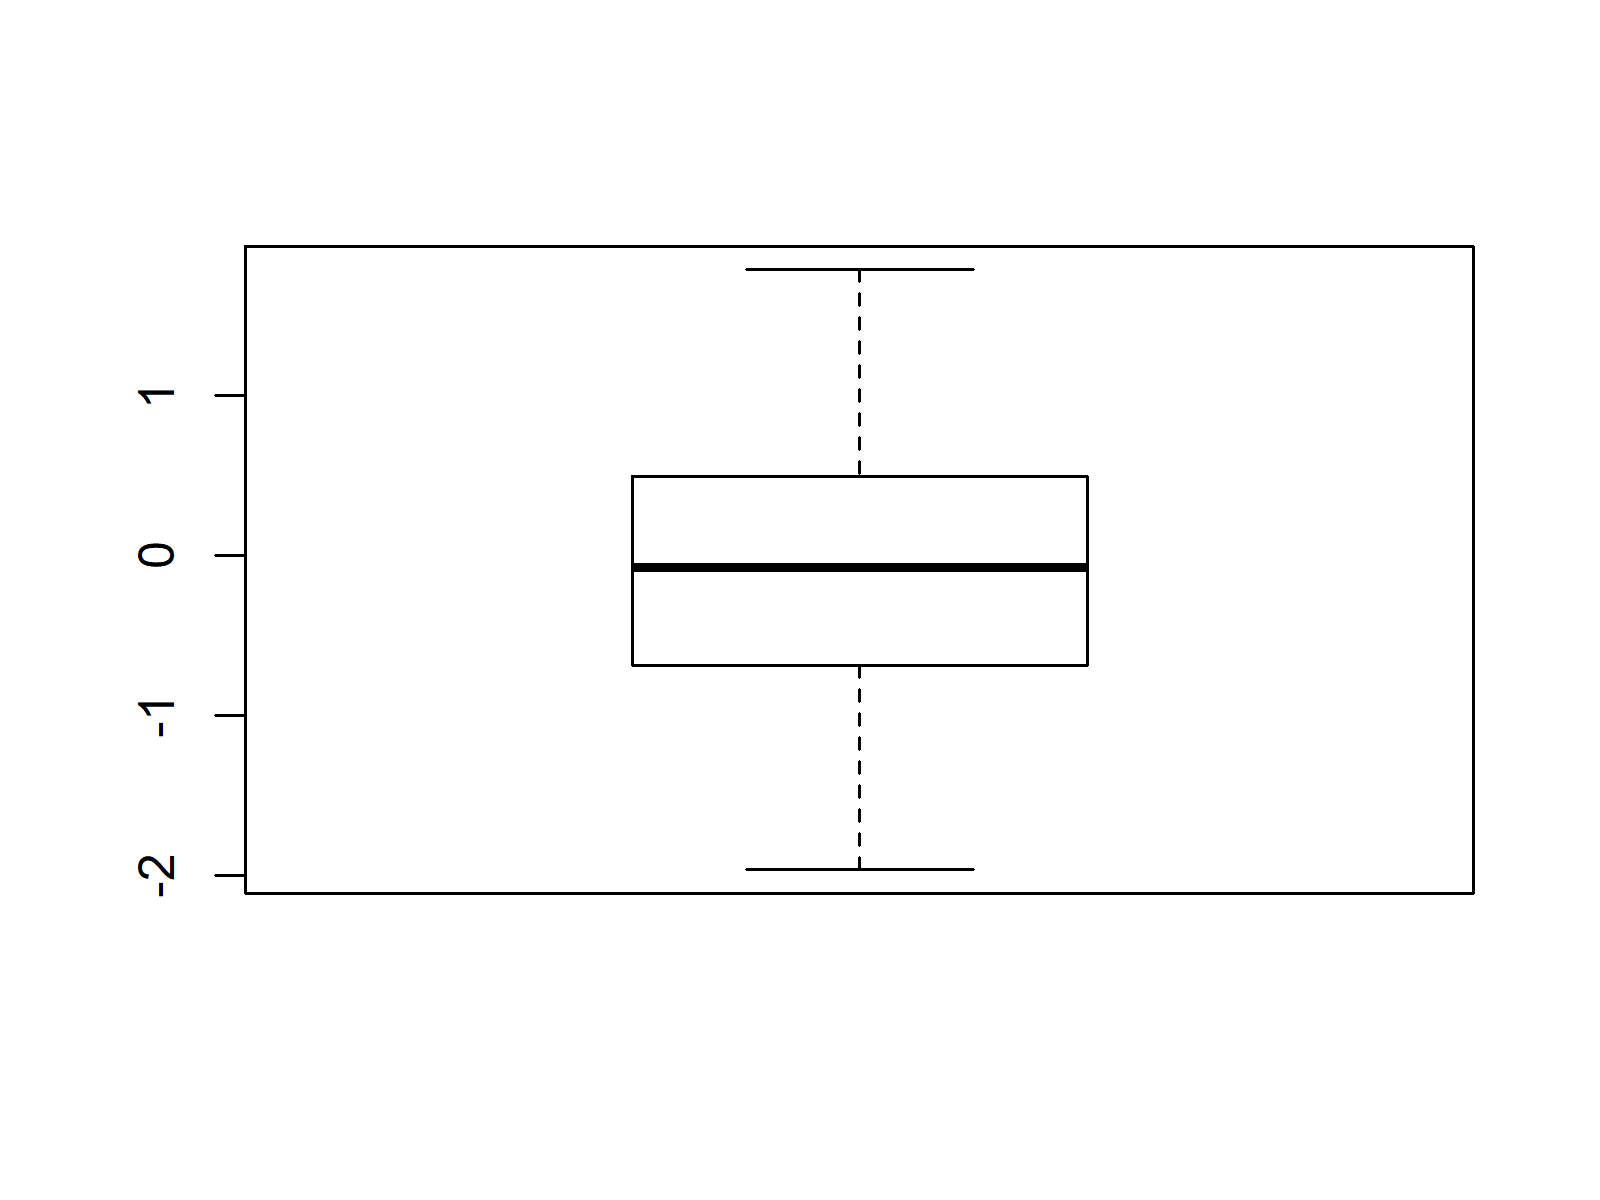 Example Boxplot in R